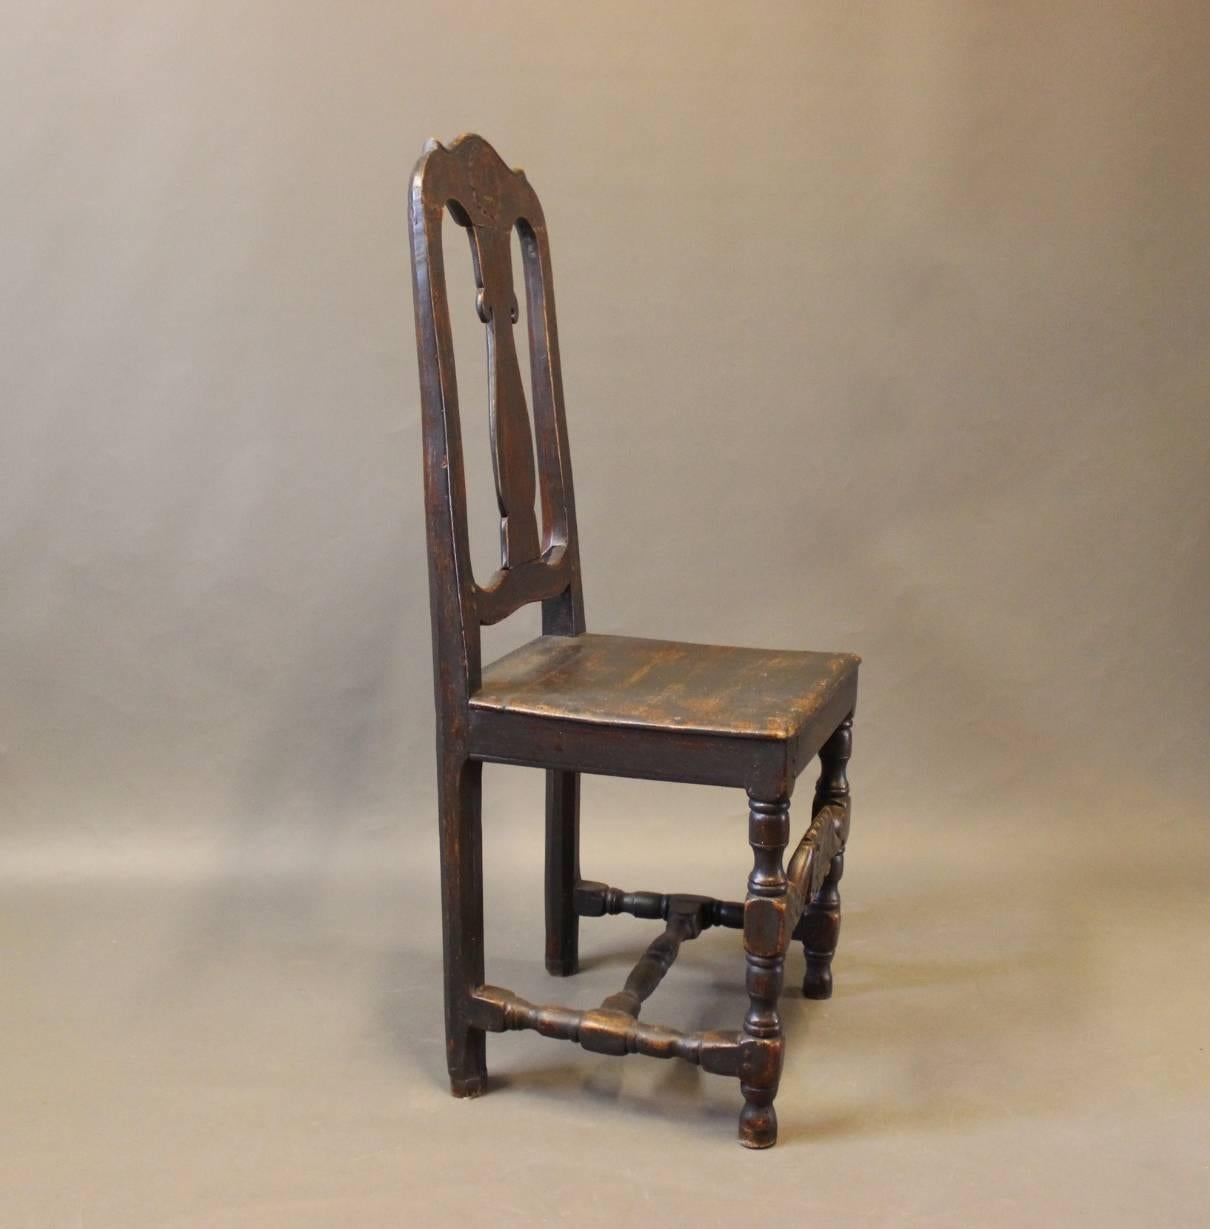 Barockstuhl aus bemaltem Holz, um 1860. Der Stuhl ist in einem hervorragenden antiken Zustand.